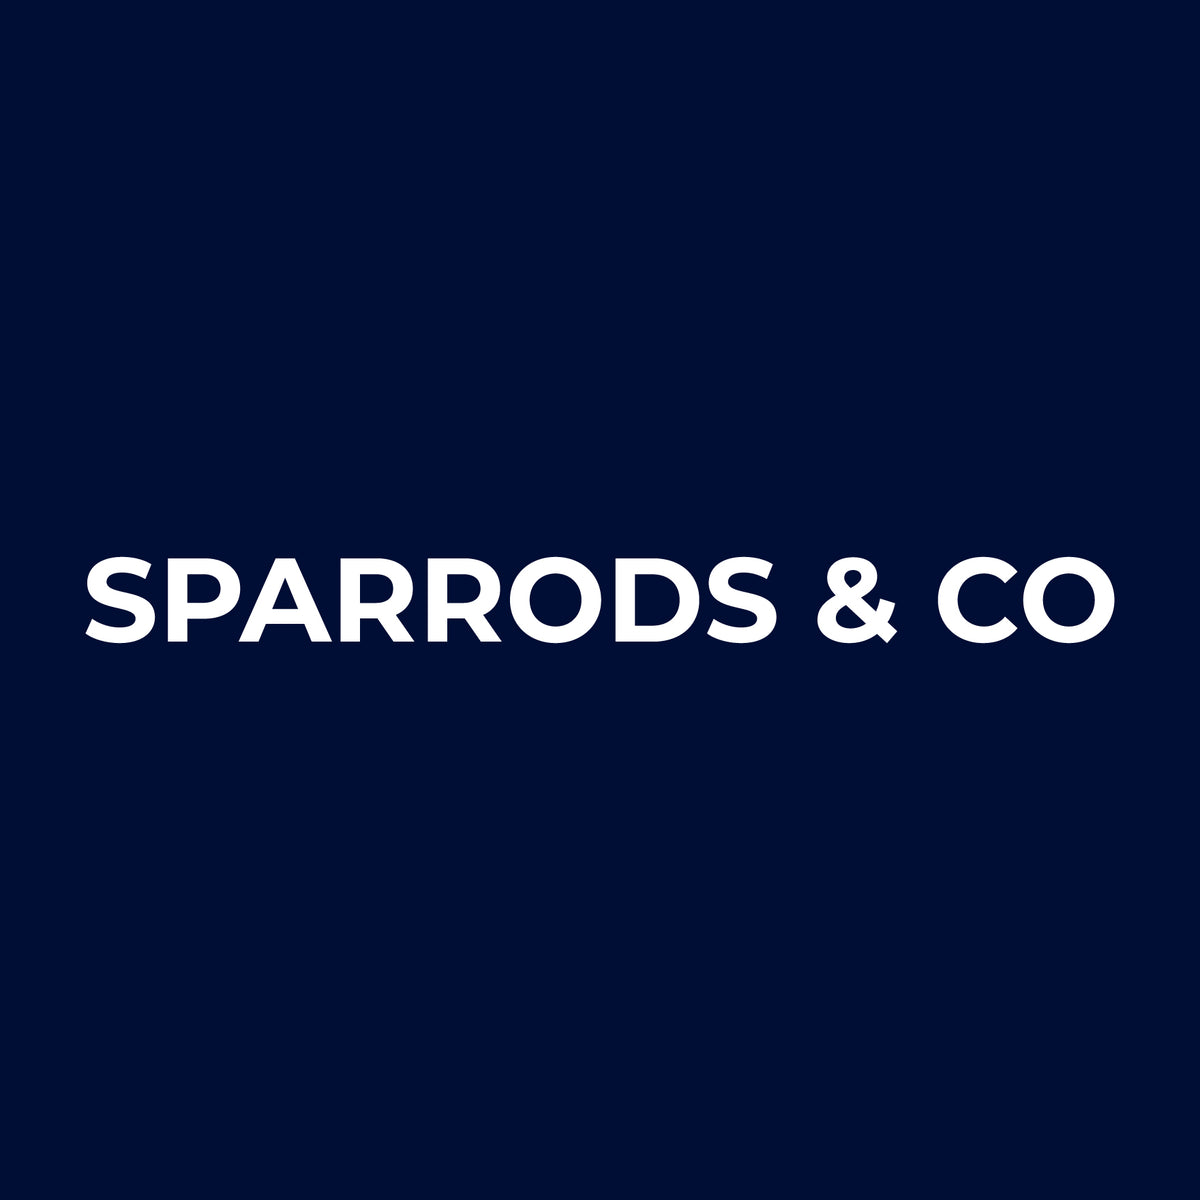 Sparrods & Co